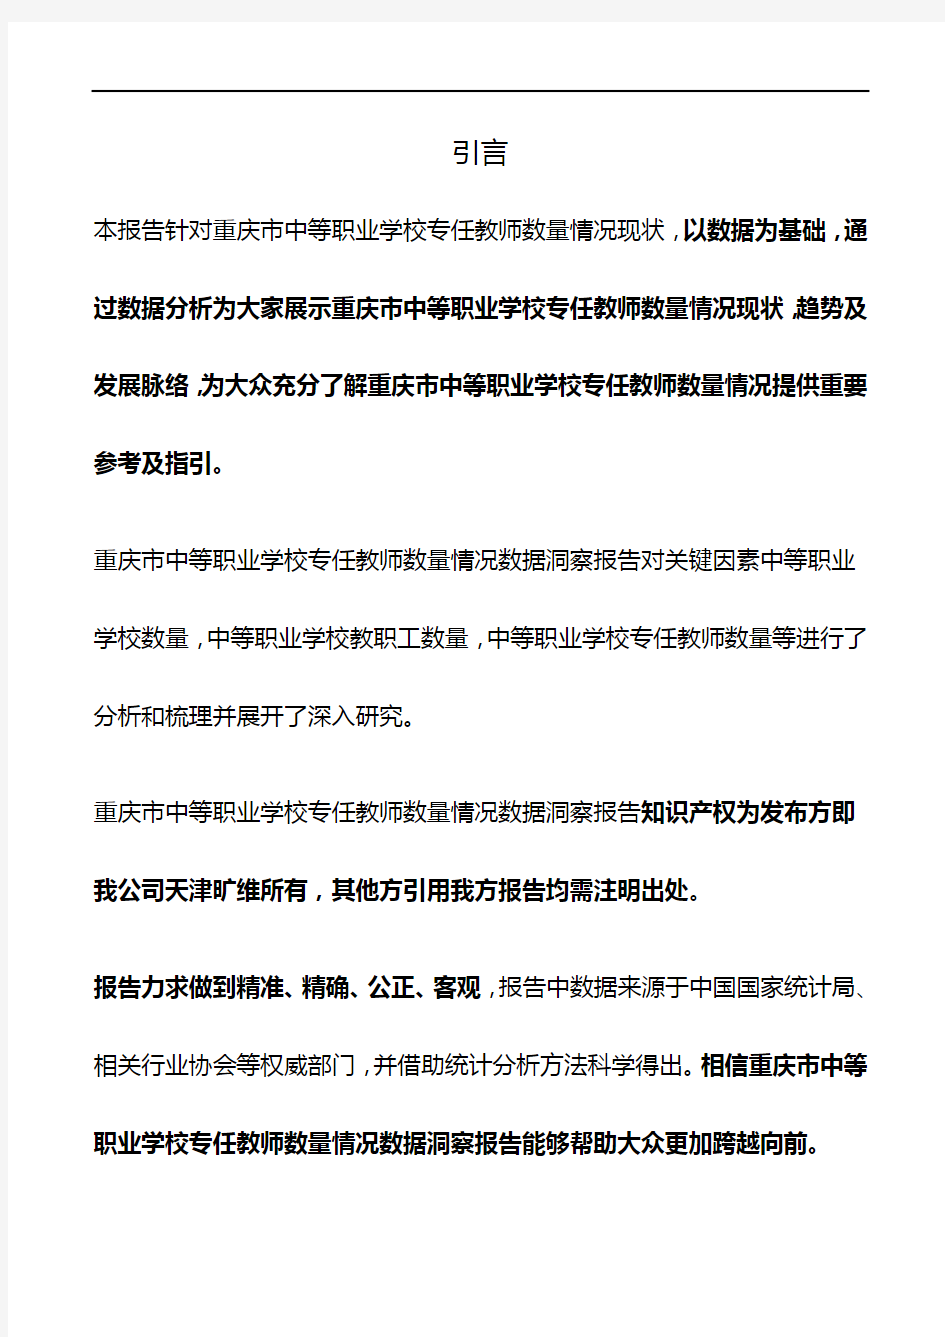 重庆市中等职业学校专任教师数量情况3年数据洞察报告2019版